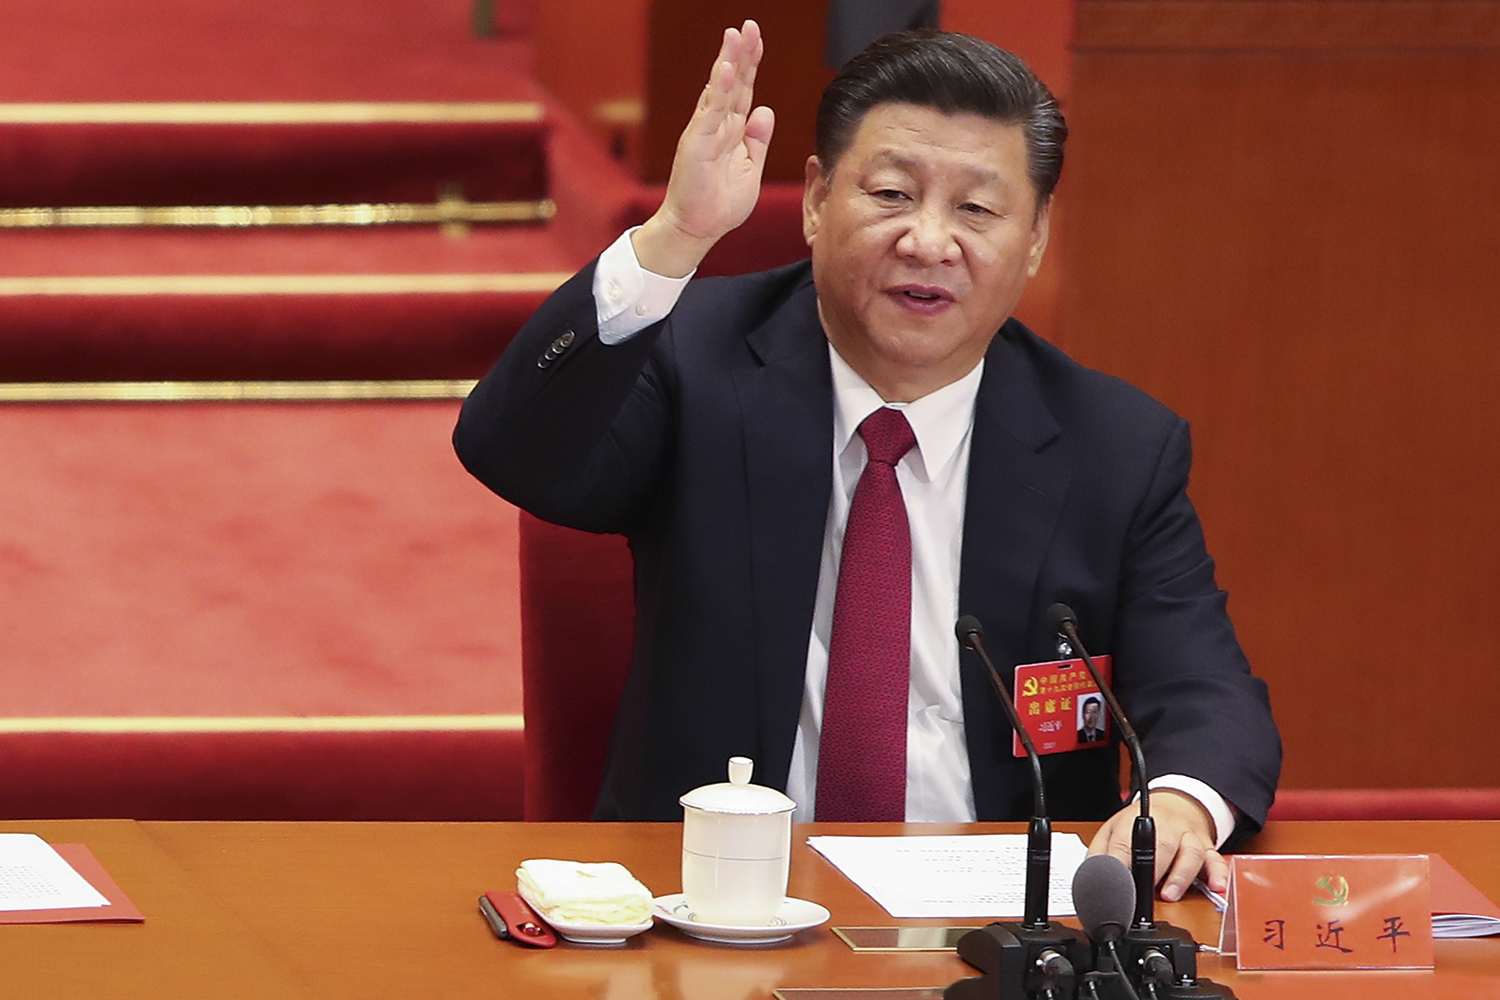 JOGO DURO - Xi Jinping: ameaça contra quem “brinca com fogo” -